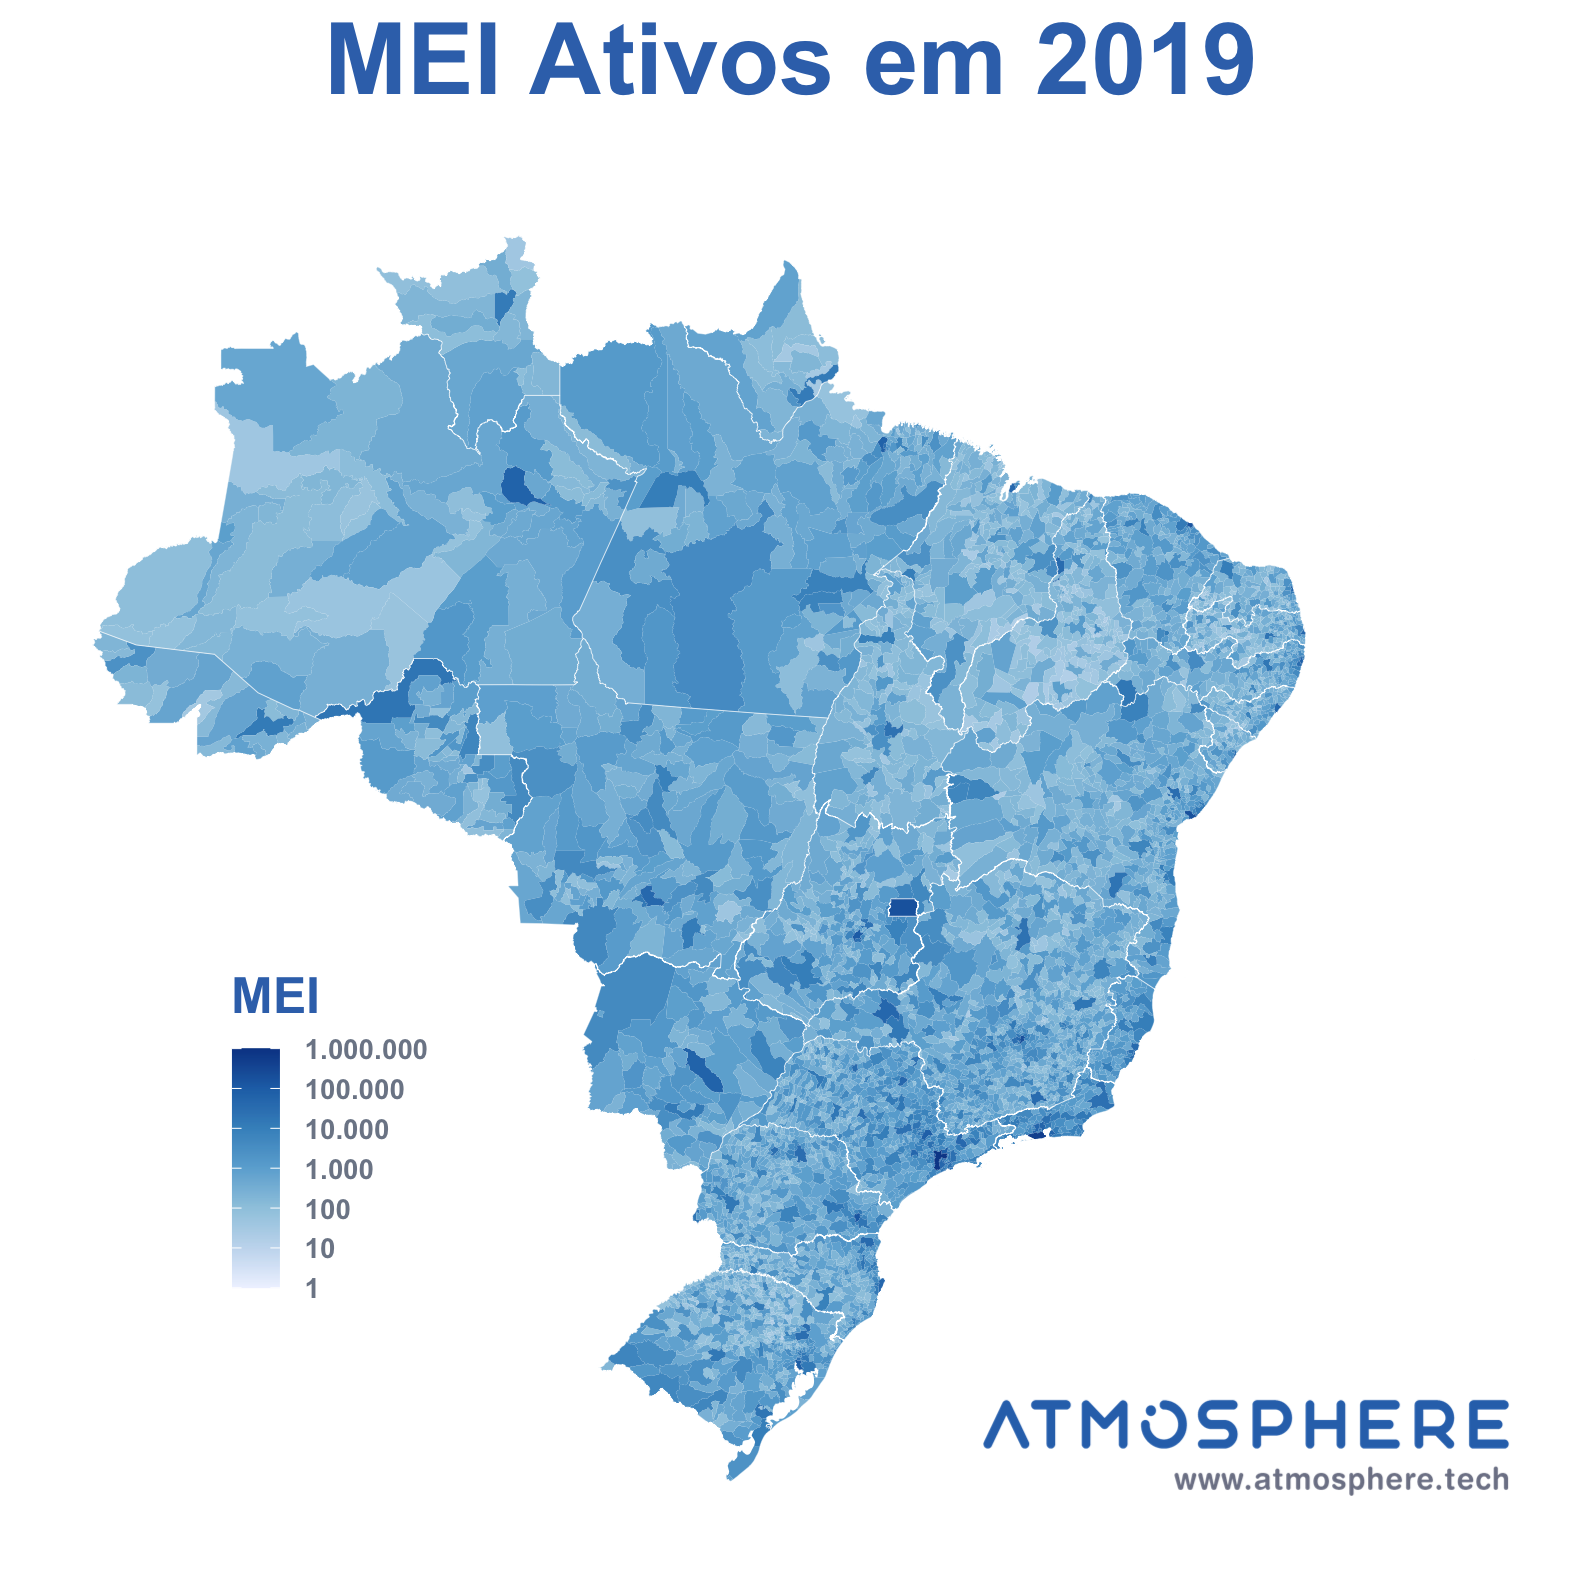 Atmosphere Mapa de MEI Ativos por município em 2019